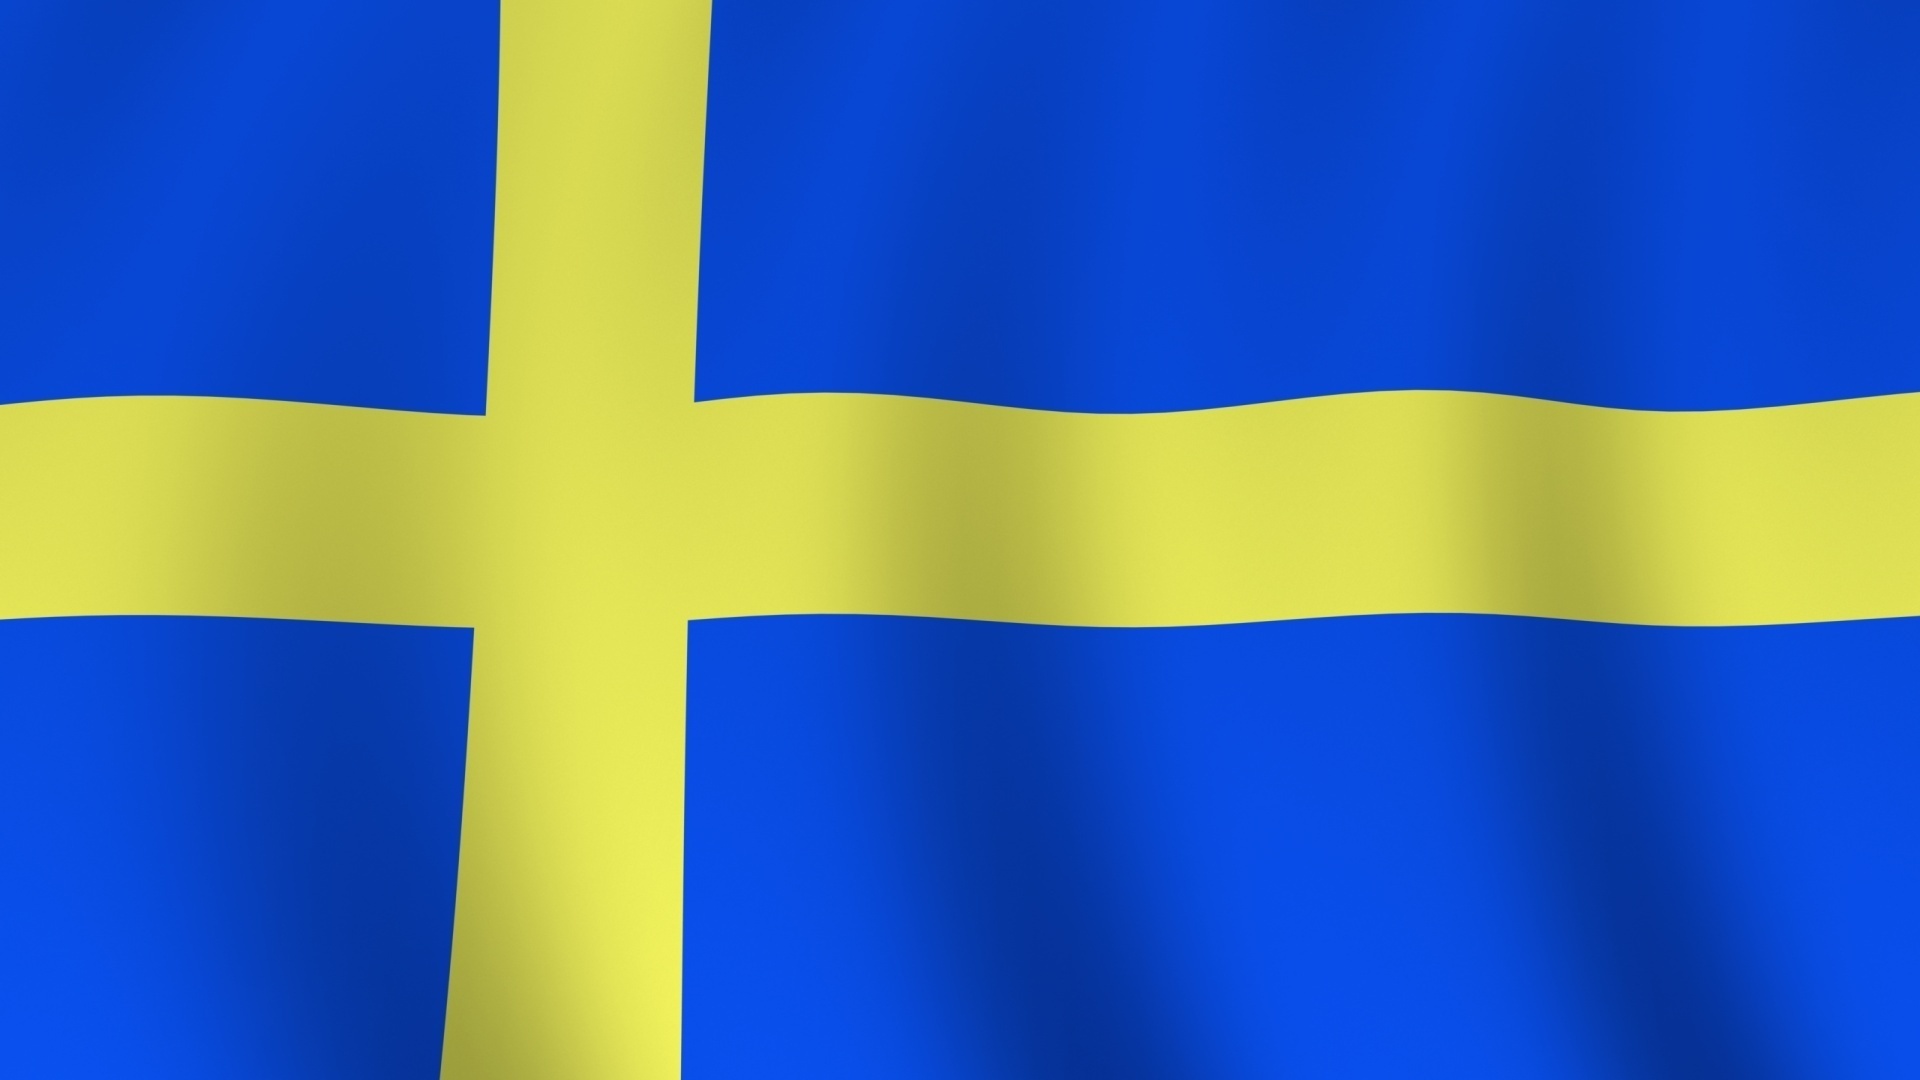 스웨덴 국기 벽지,짙은 청록색,깃발,푸른,강청색,노랑